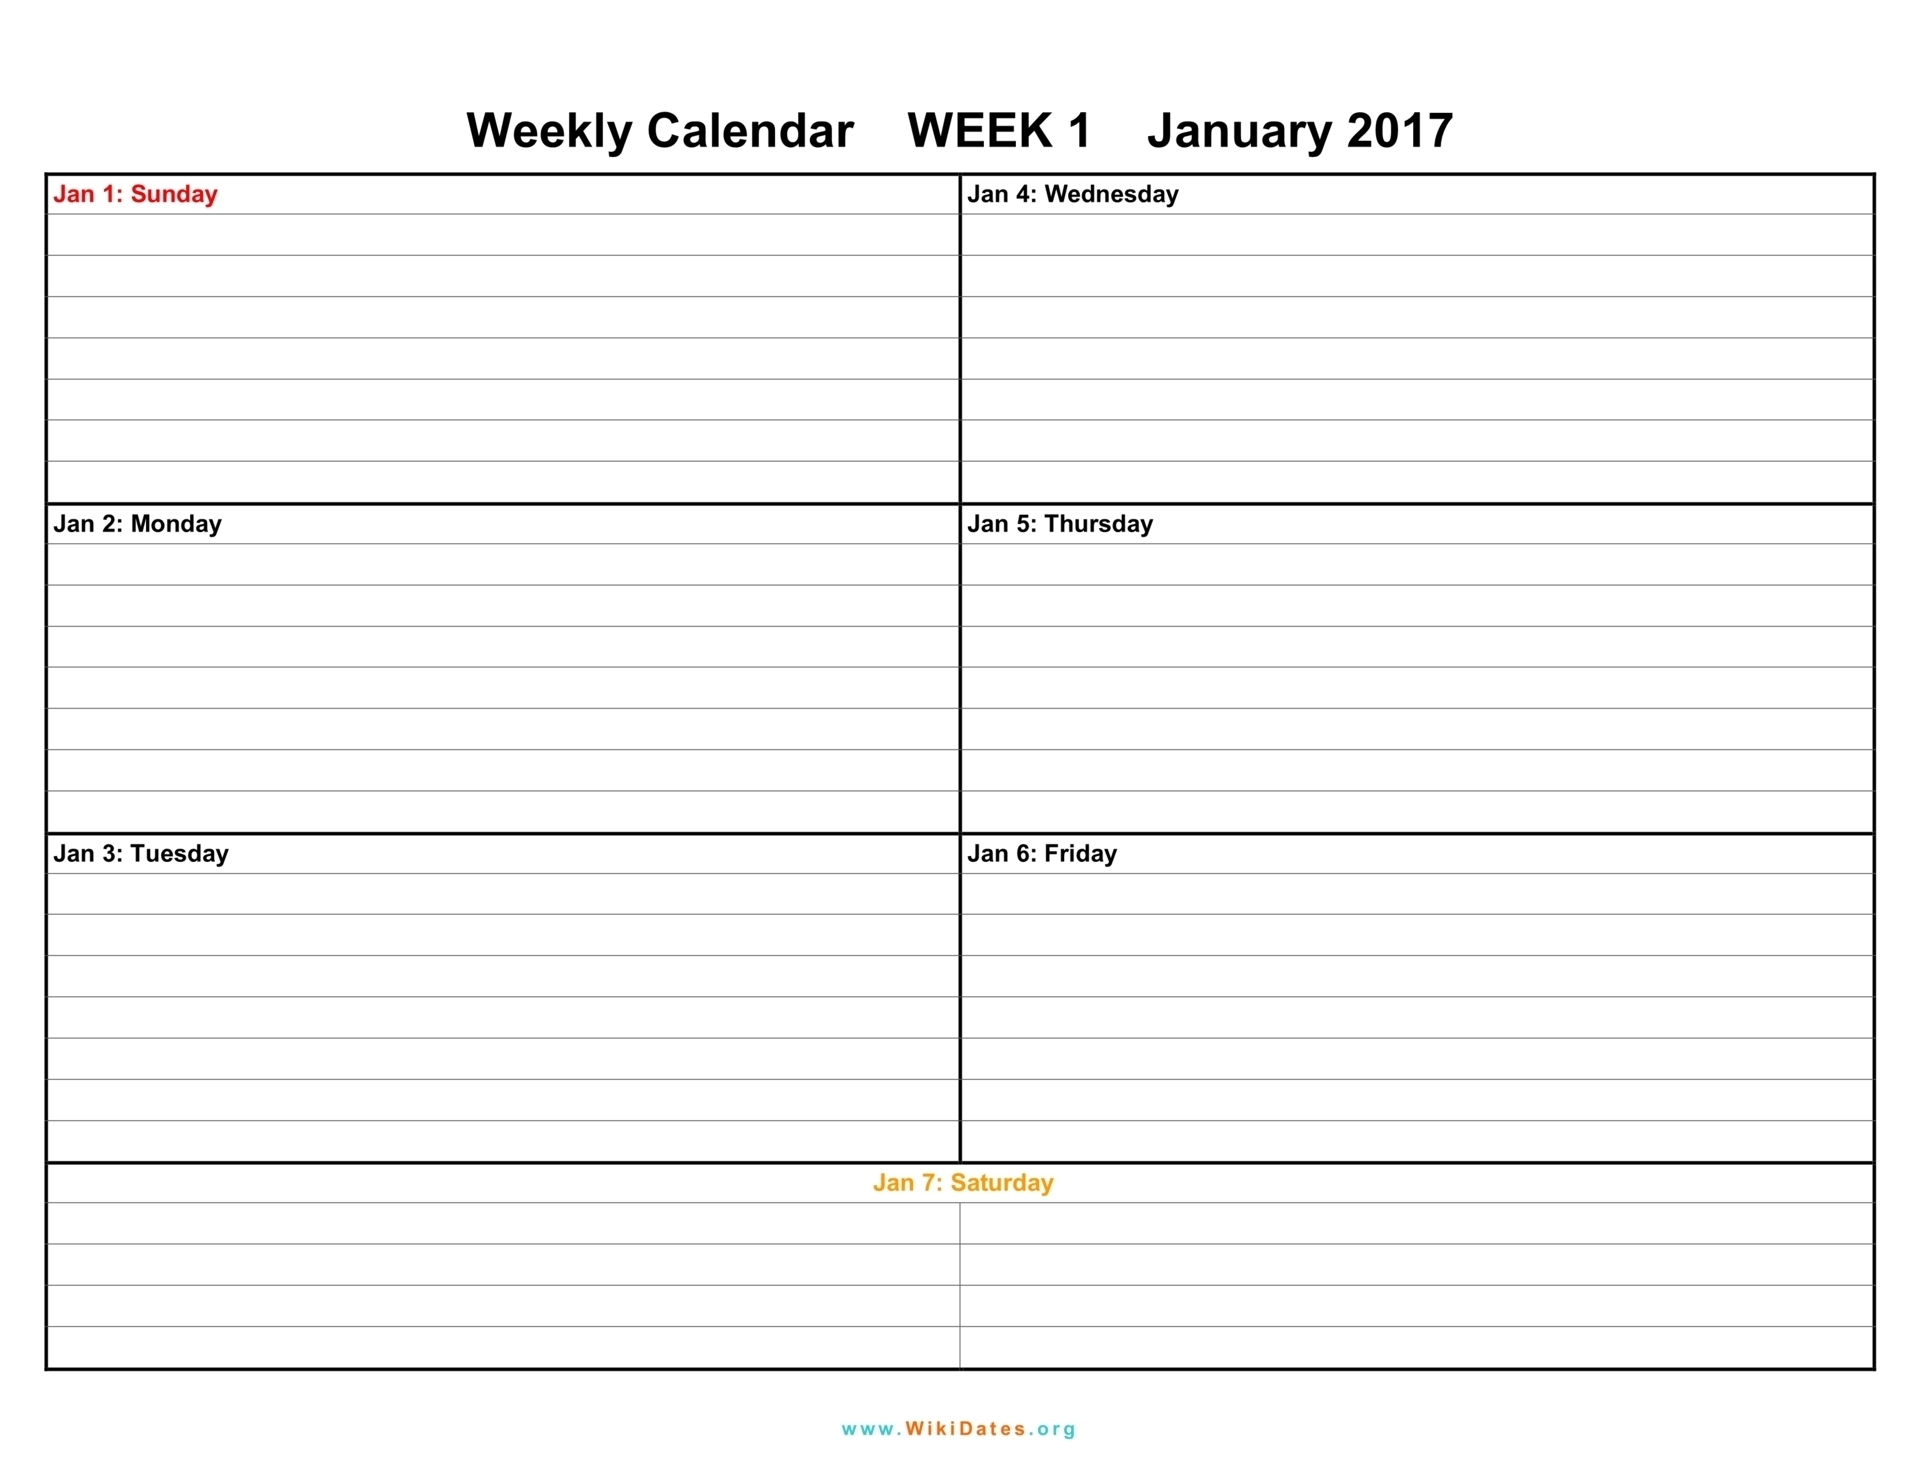 Weekly Calendar - Download Weekly Calendar 2017 And 2018| Wikidates in 1 Week Vacation Calendar Printable